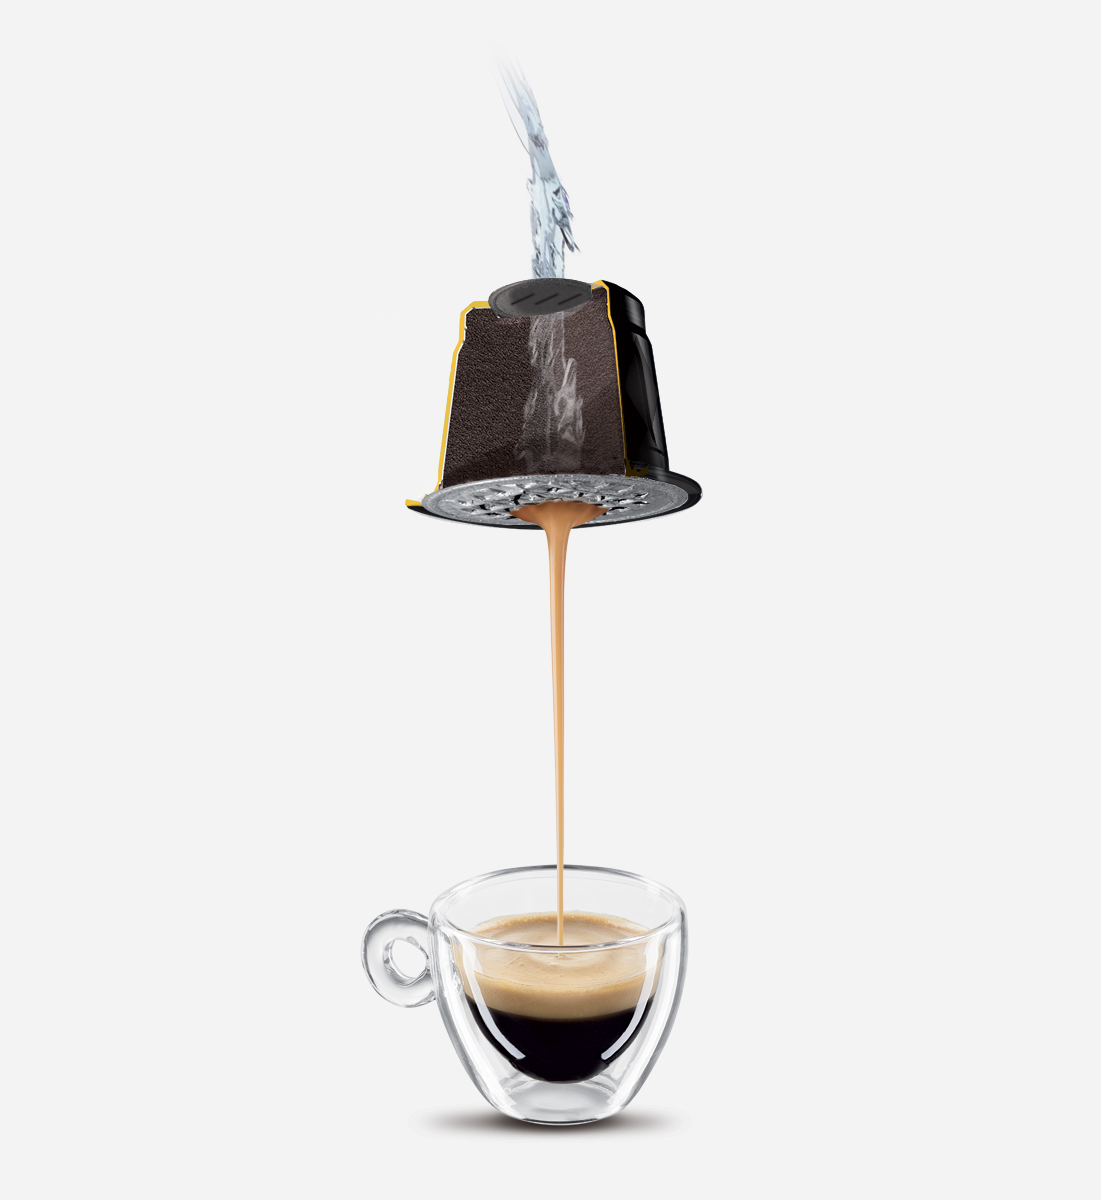 CAPSULA 10mm self-protected - caffè - Compatibile Nespresso